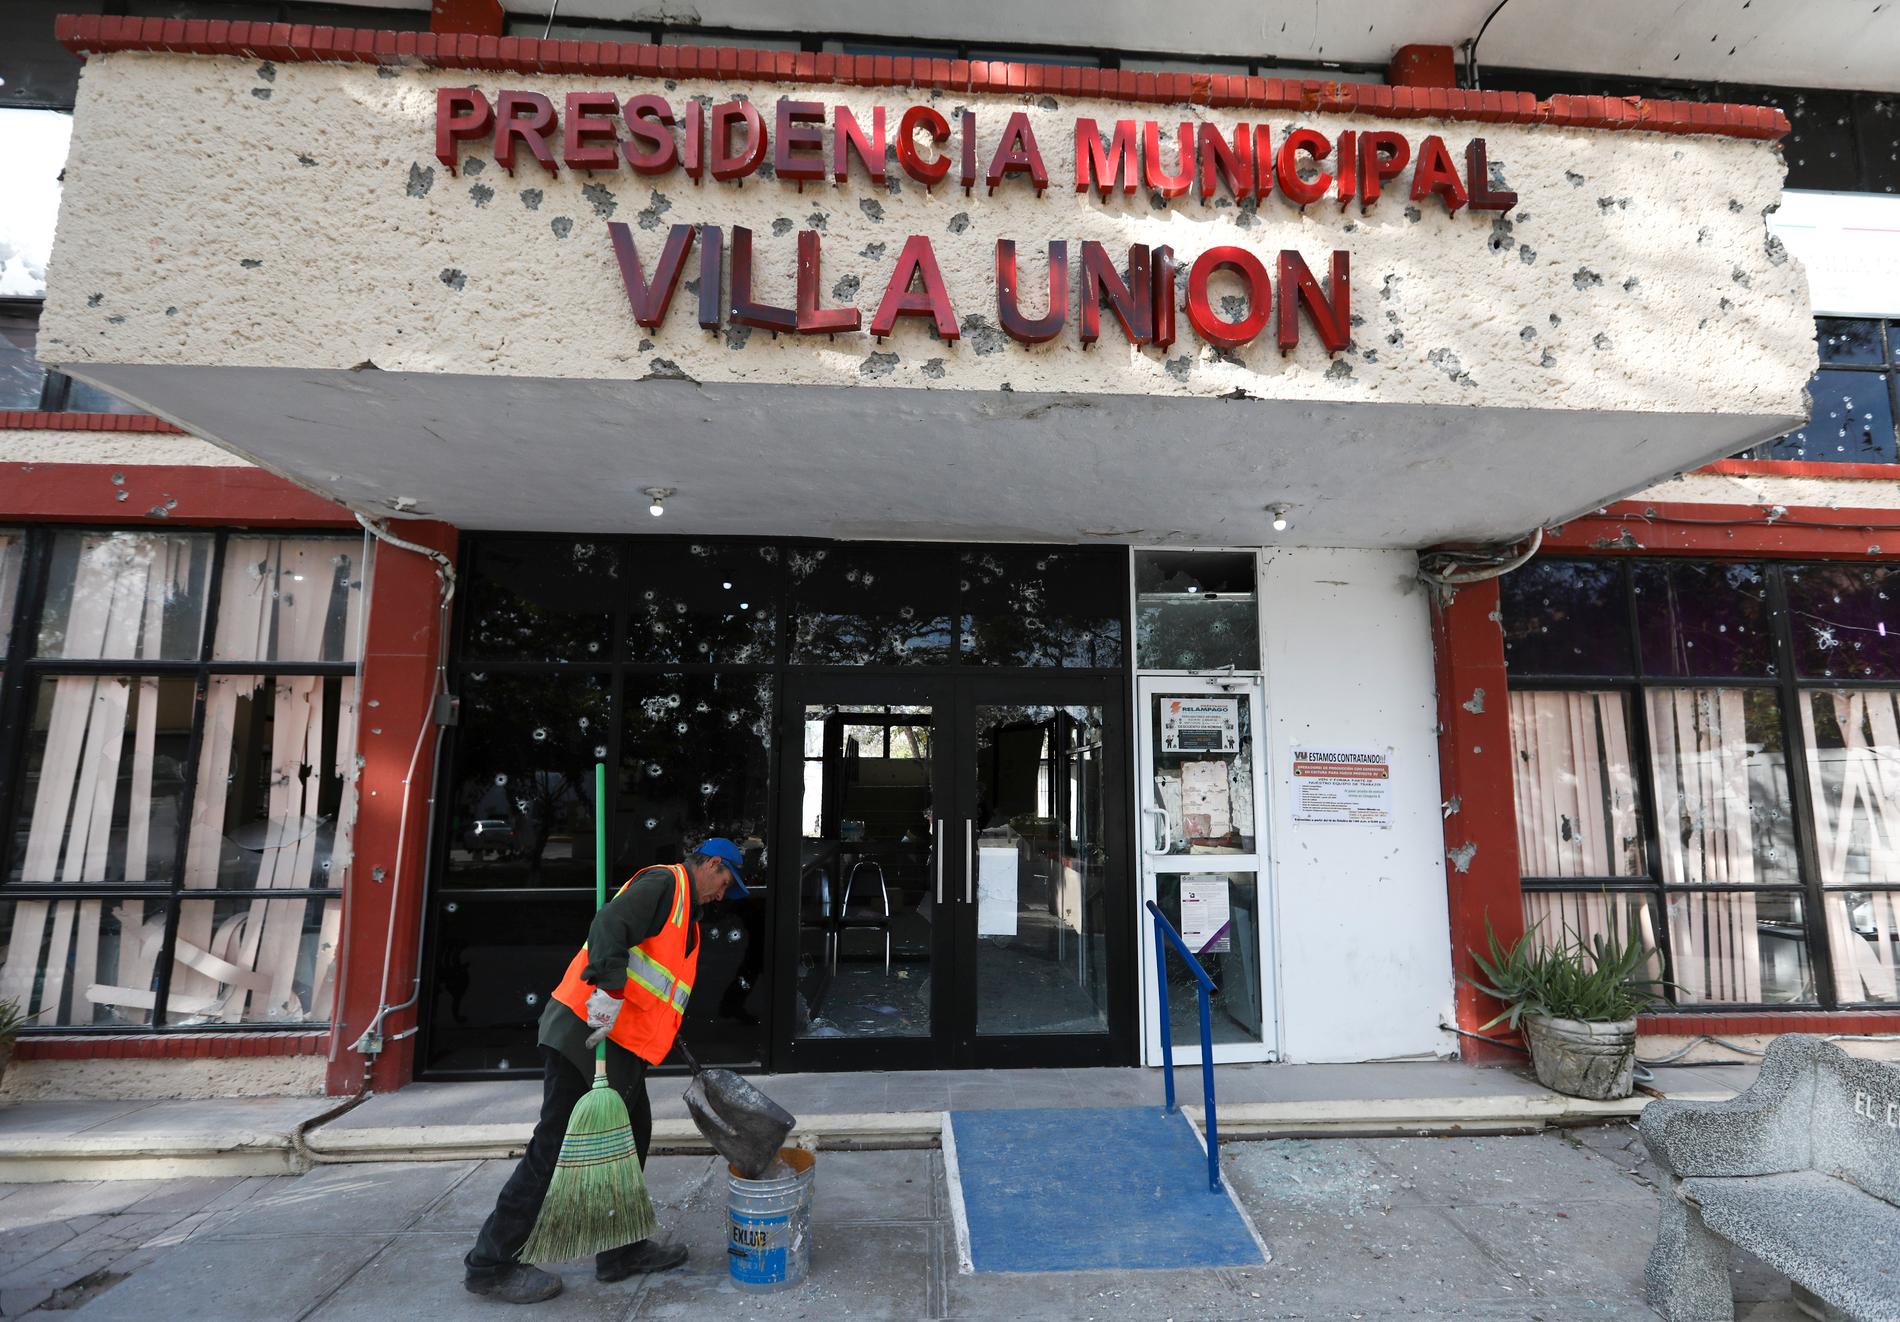 Mexiko är hårt drabbat av gängkriminalitet. Här städar en anställd upp utanför stadshuset i Villa Unión efter det att 23 människor dödats i staden i strider mellan säkerhetsstyrkor och en kraftigt beväpnad drogkartell i december.